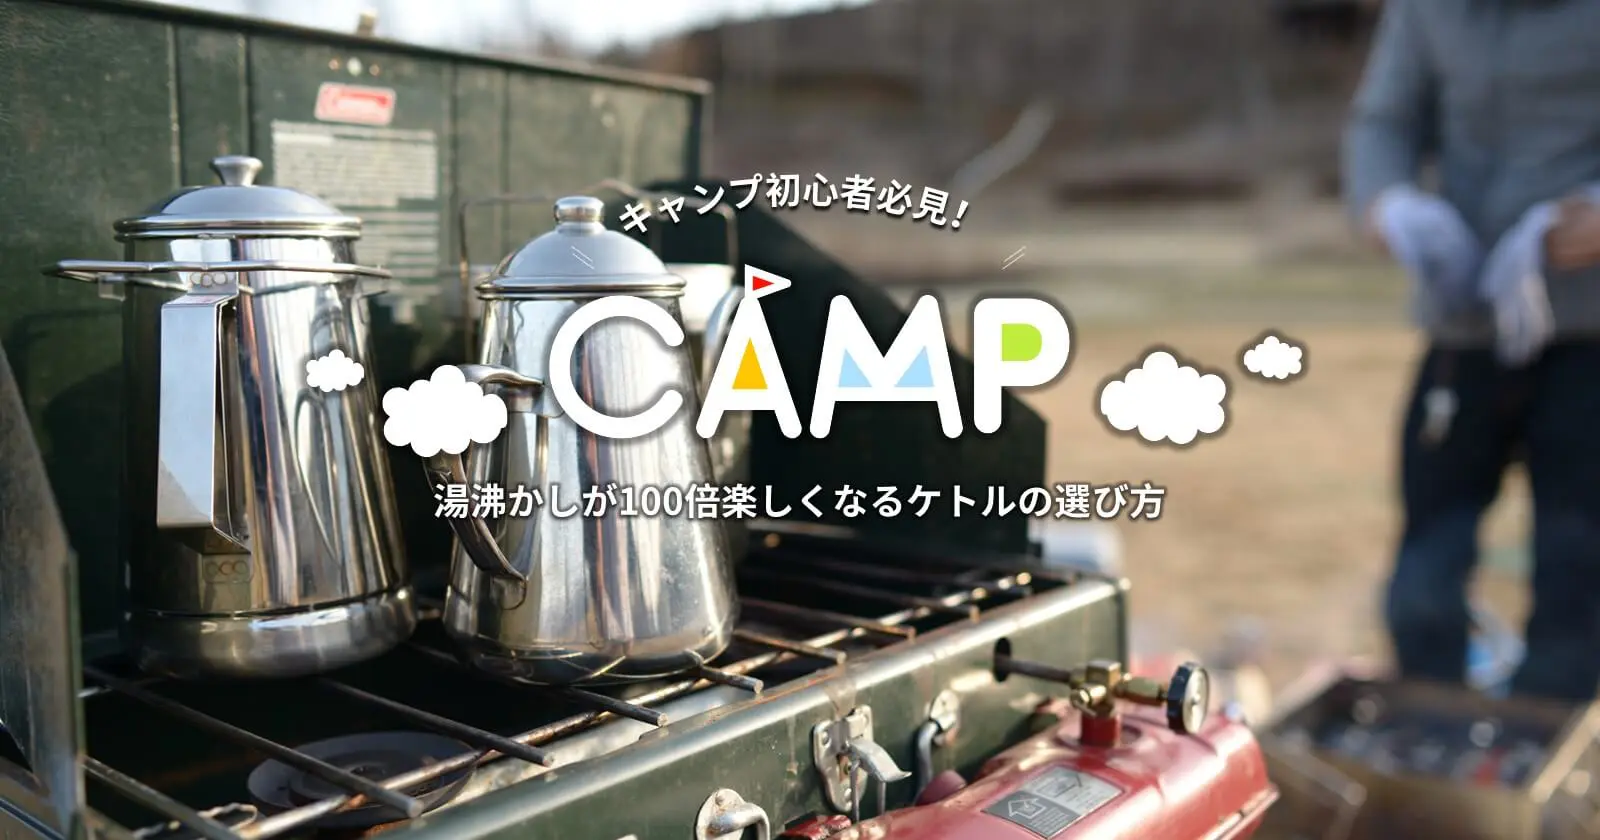 キャンプでの湯沸かしが100倍楽しくなるケトルの選び方 Takibi タキビ キャンプ グランピングなどアウトドアの総合情報サイト